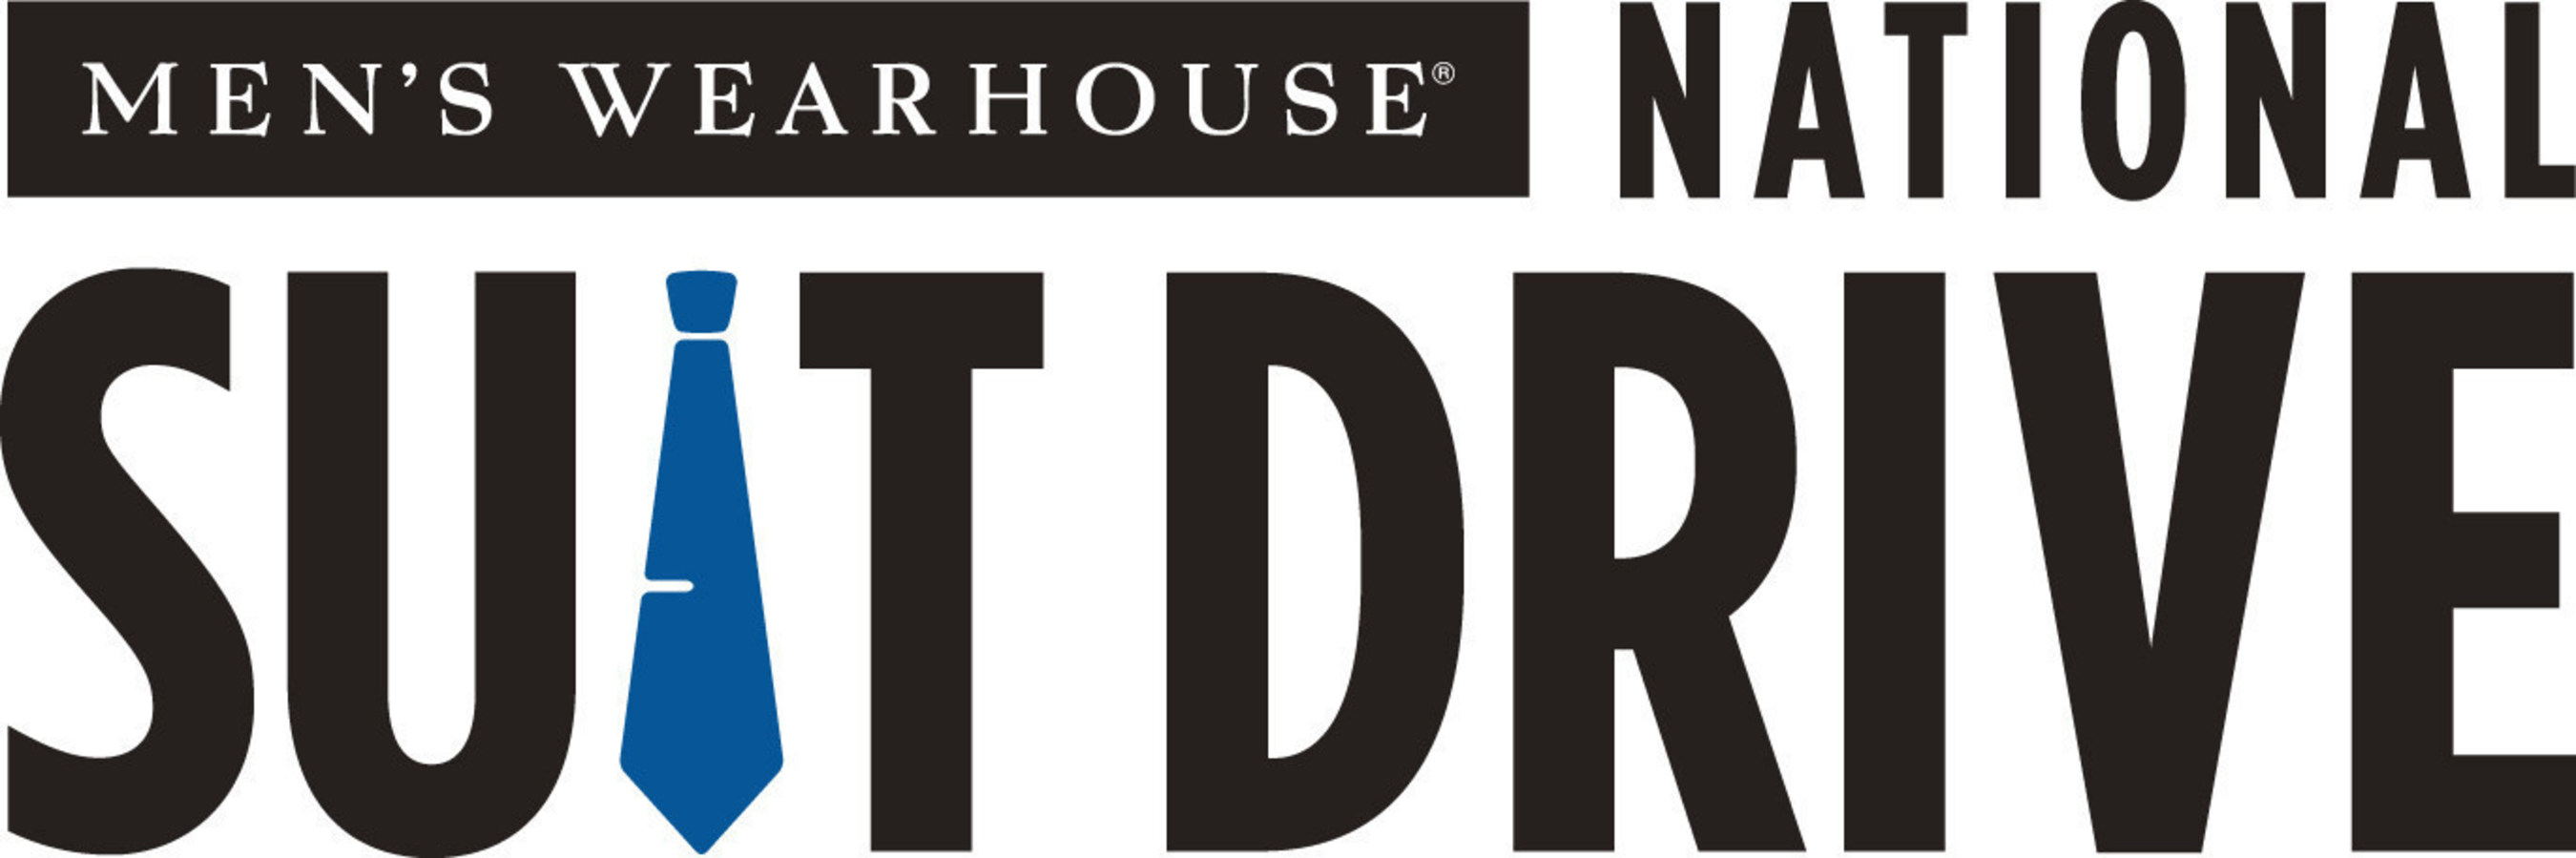 Men's Wearhouse National Suit Drive Logo